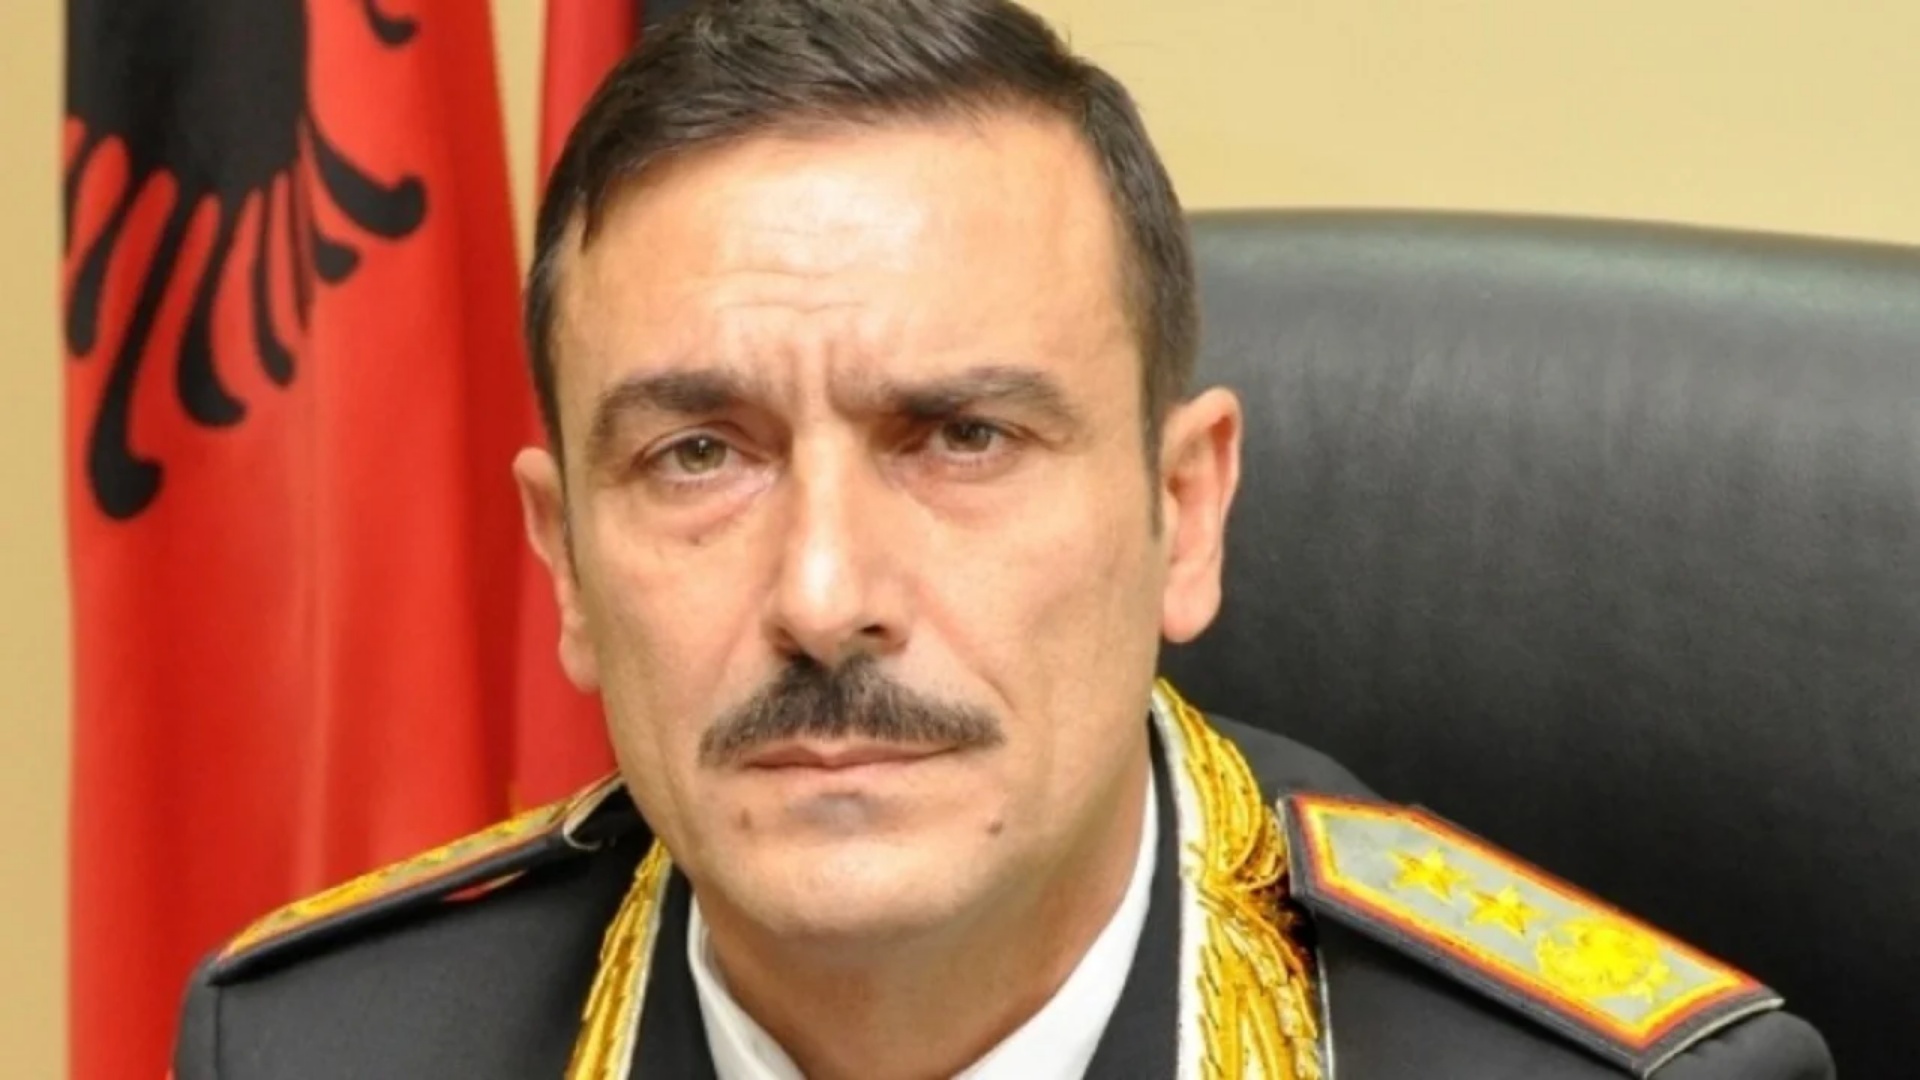 Kthehet Artan Didi, ish-drejtori i përgjithshëm i Policisë së Shtetit kërkon të drejtojë Gardën e Republikës. Ja kandidatët në garë!